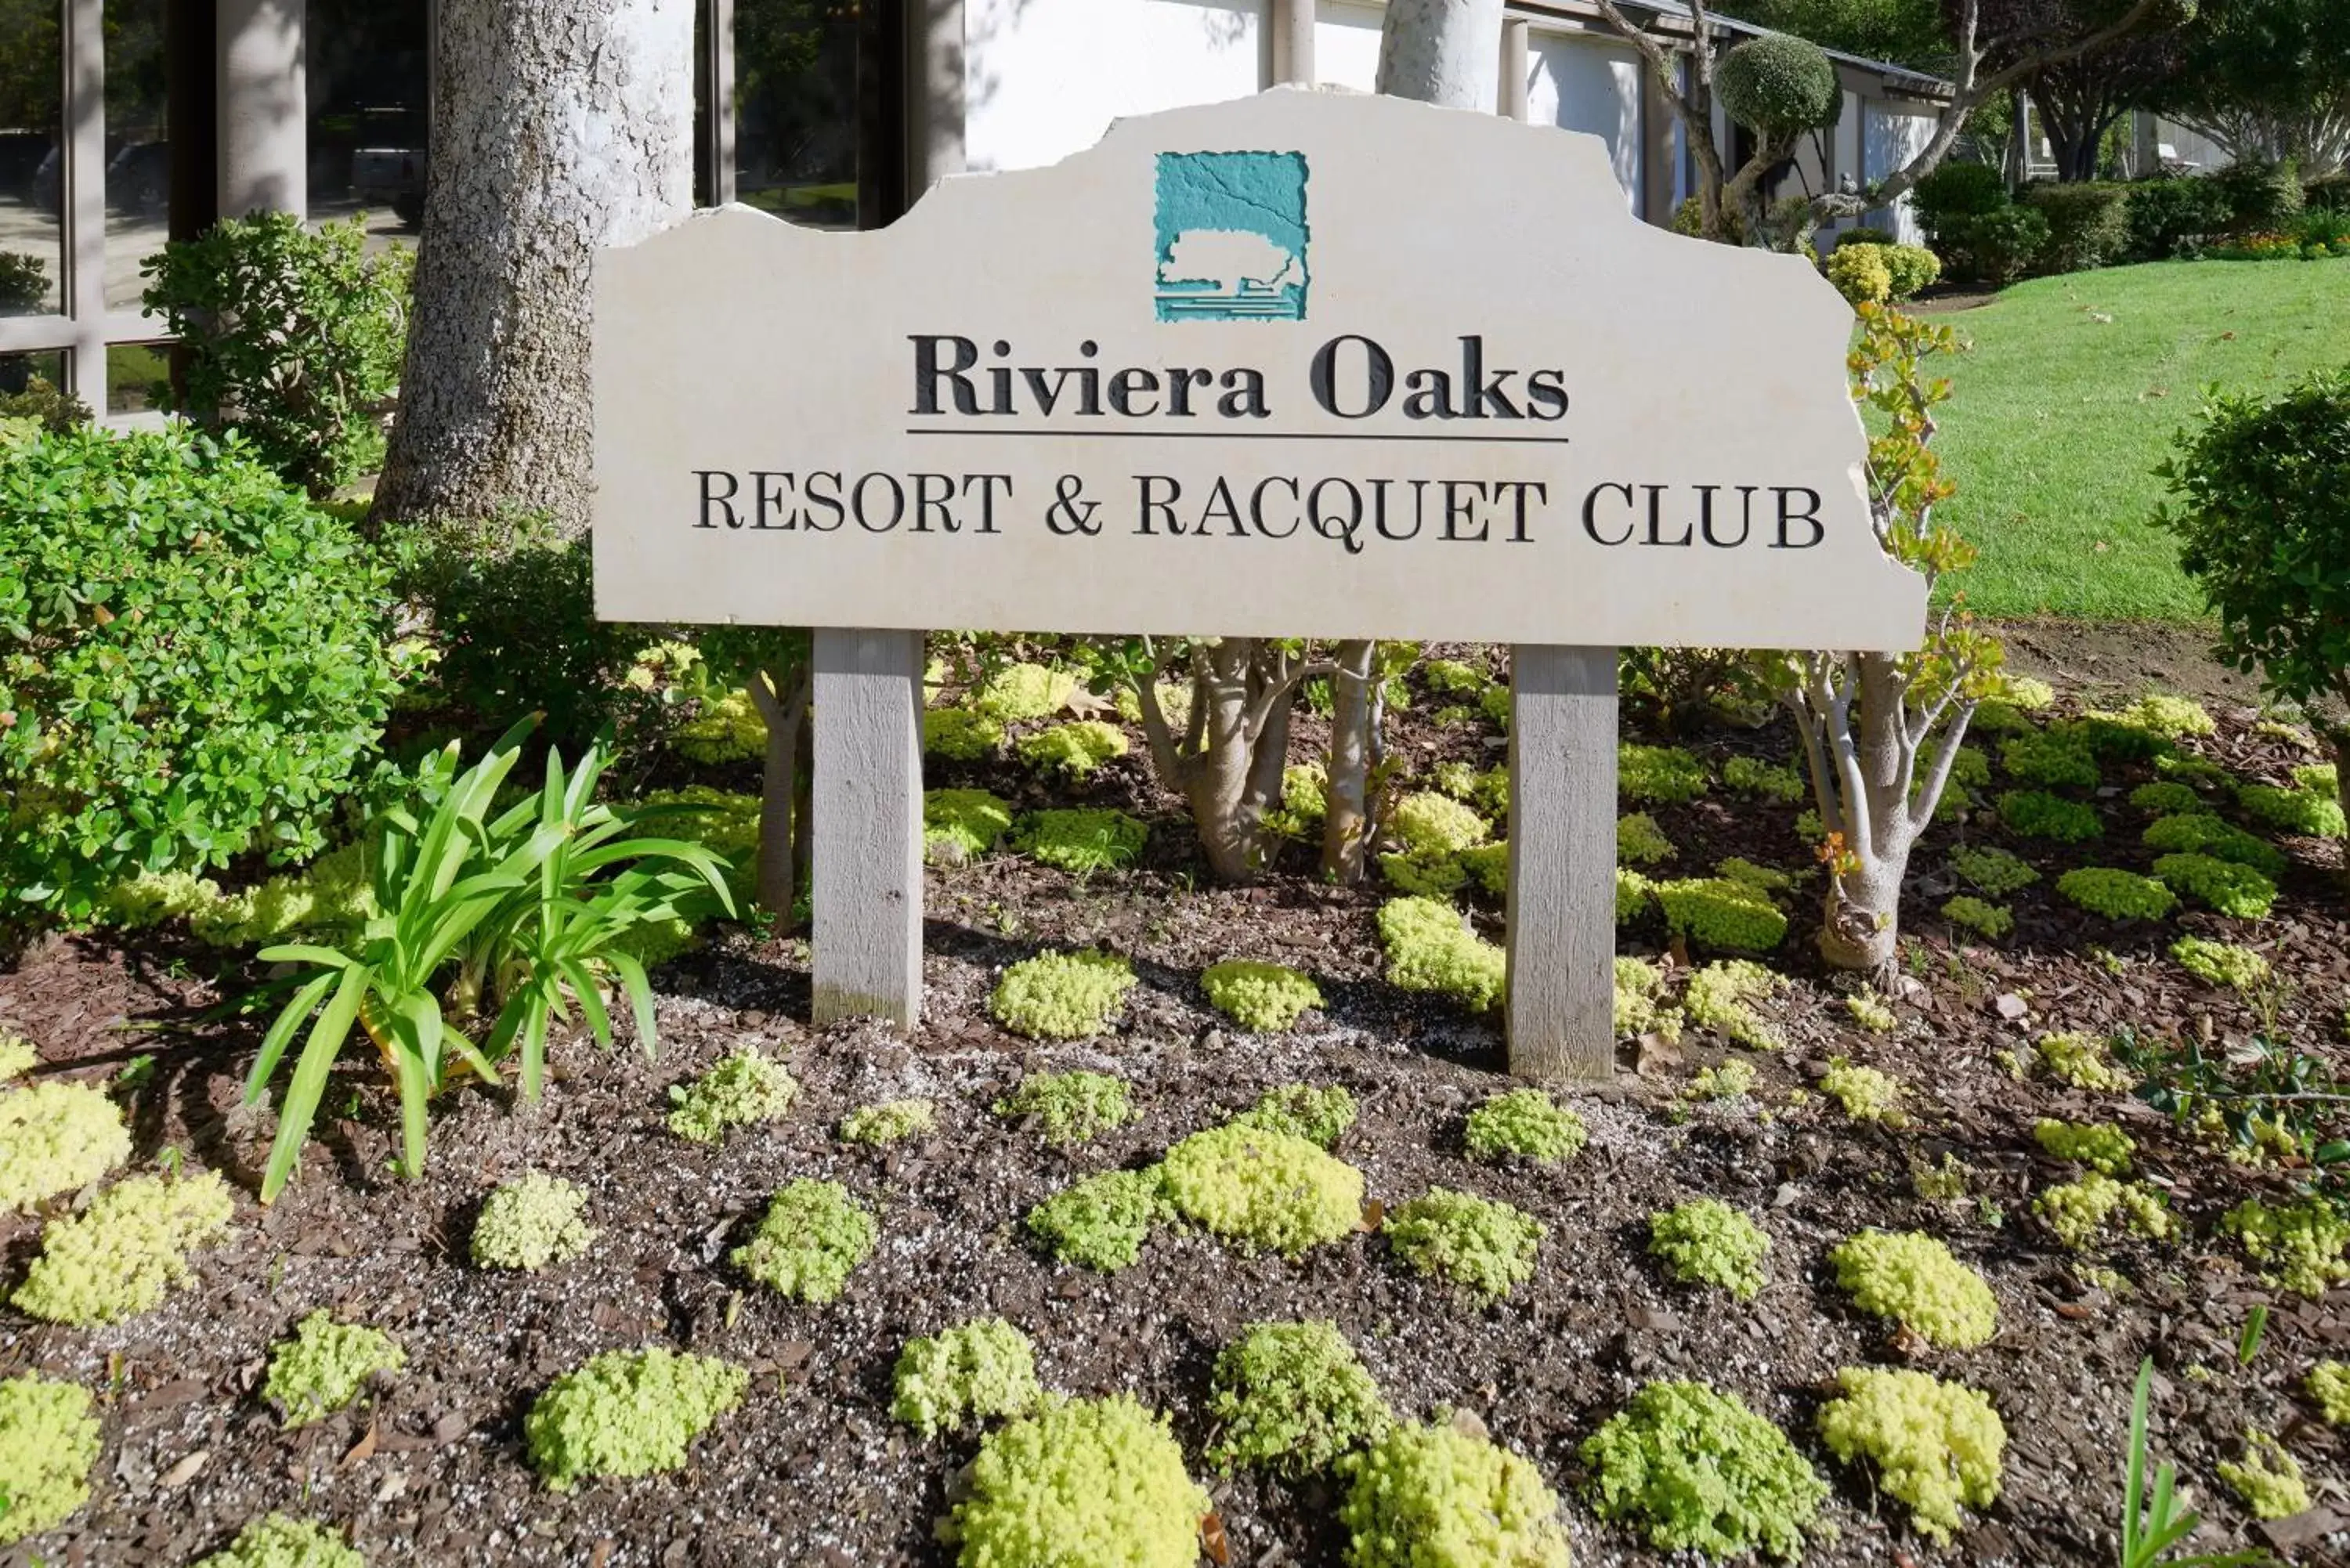 Day in Riviera Oaks Resort